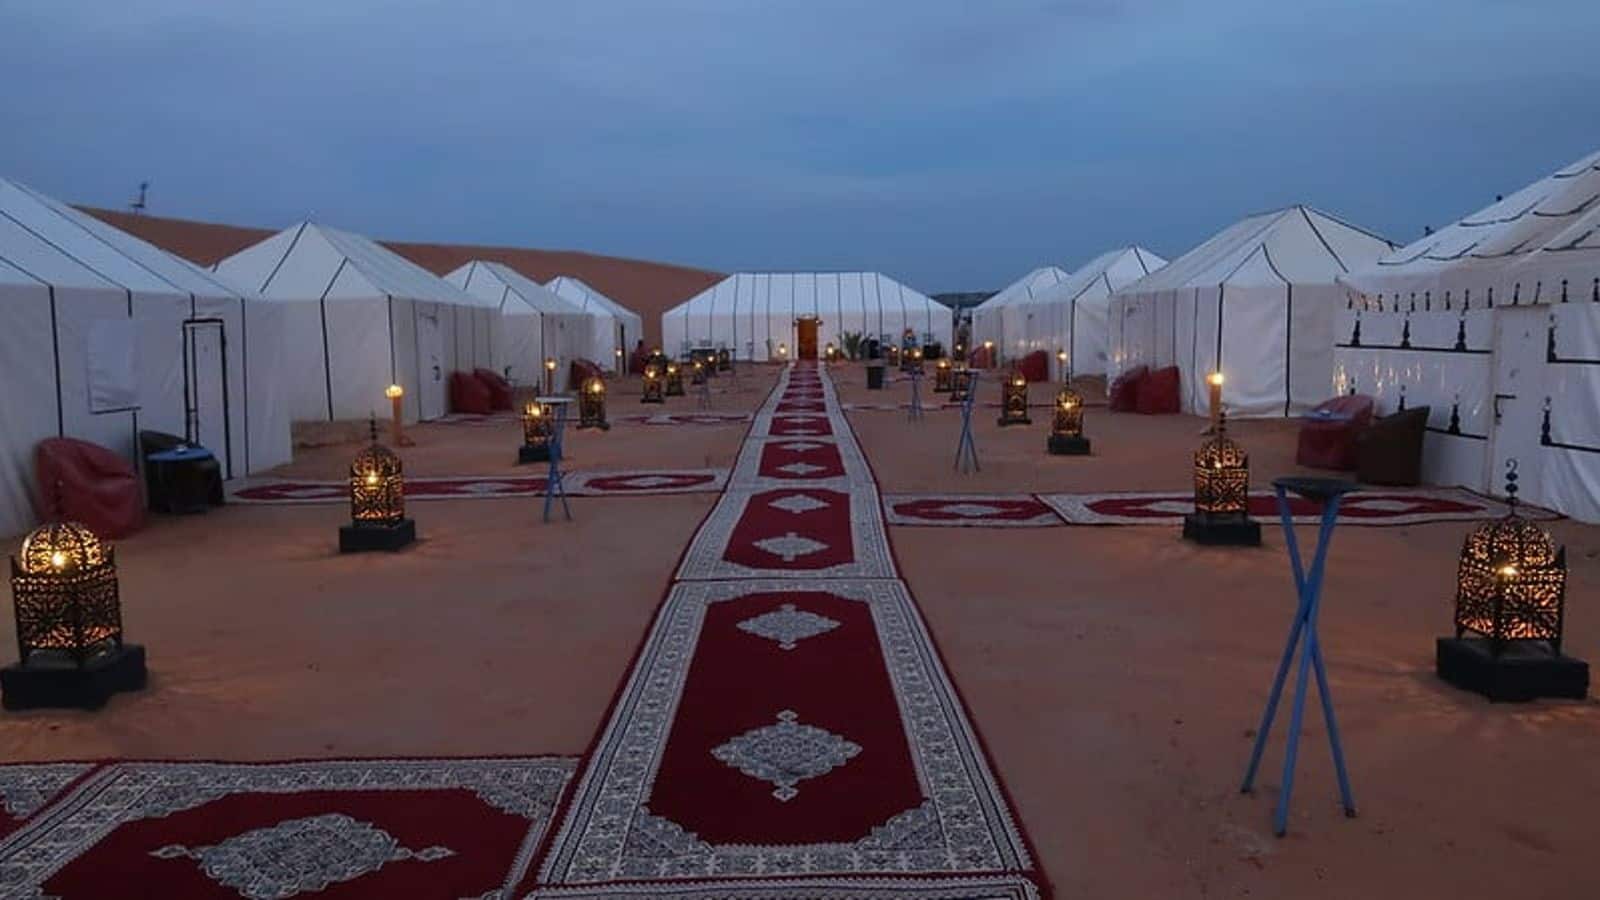 Marrakech's magical desert glamping